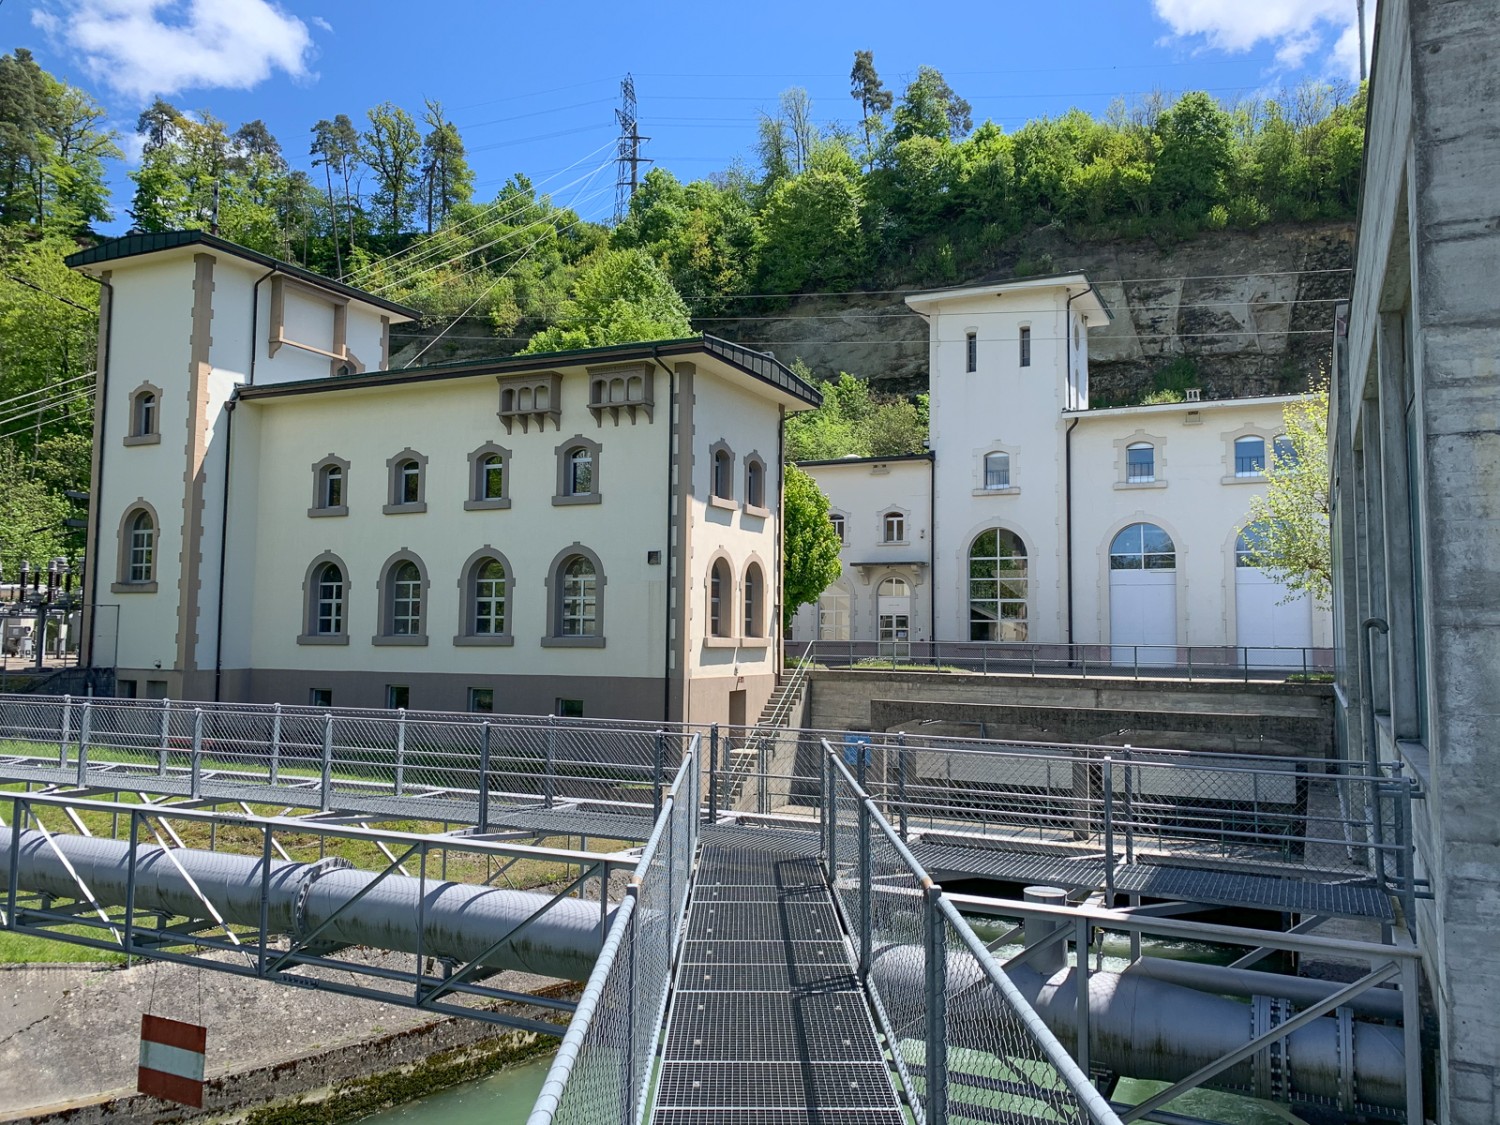 Il sentiero passa a fianco della centrale idroelettrica di Hauterive che, grazie alla sua tranquilla posizione tra il fiume e il bosco, è davvero imponente. Foto: Monika Leuenberger